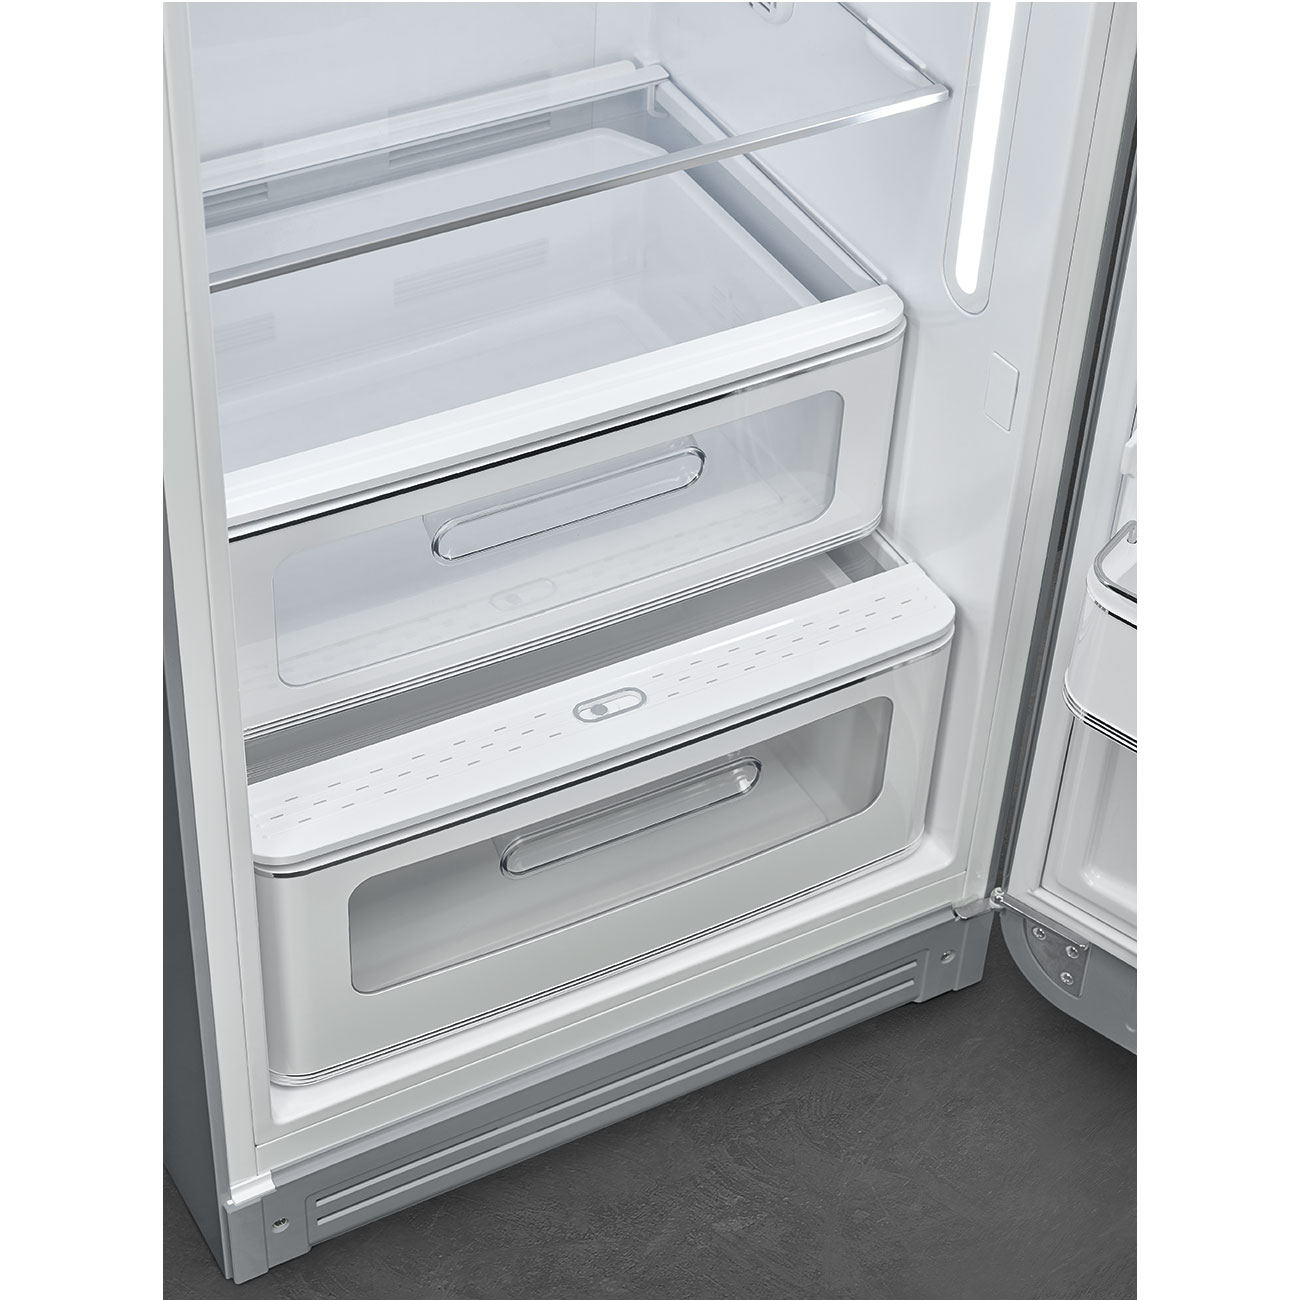 Silver refrigerator - Smeg_5